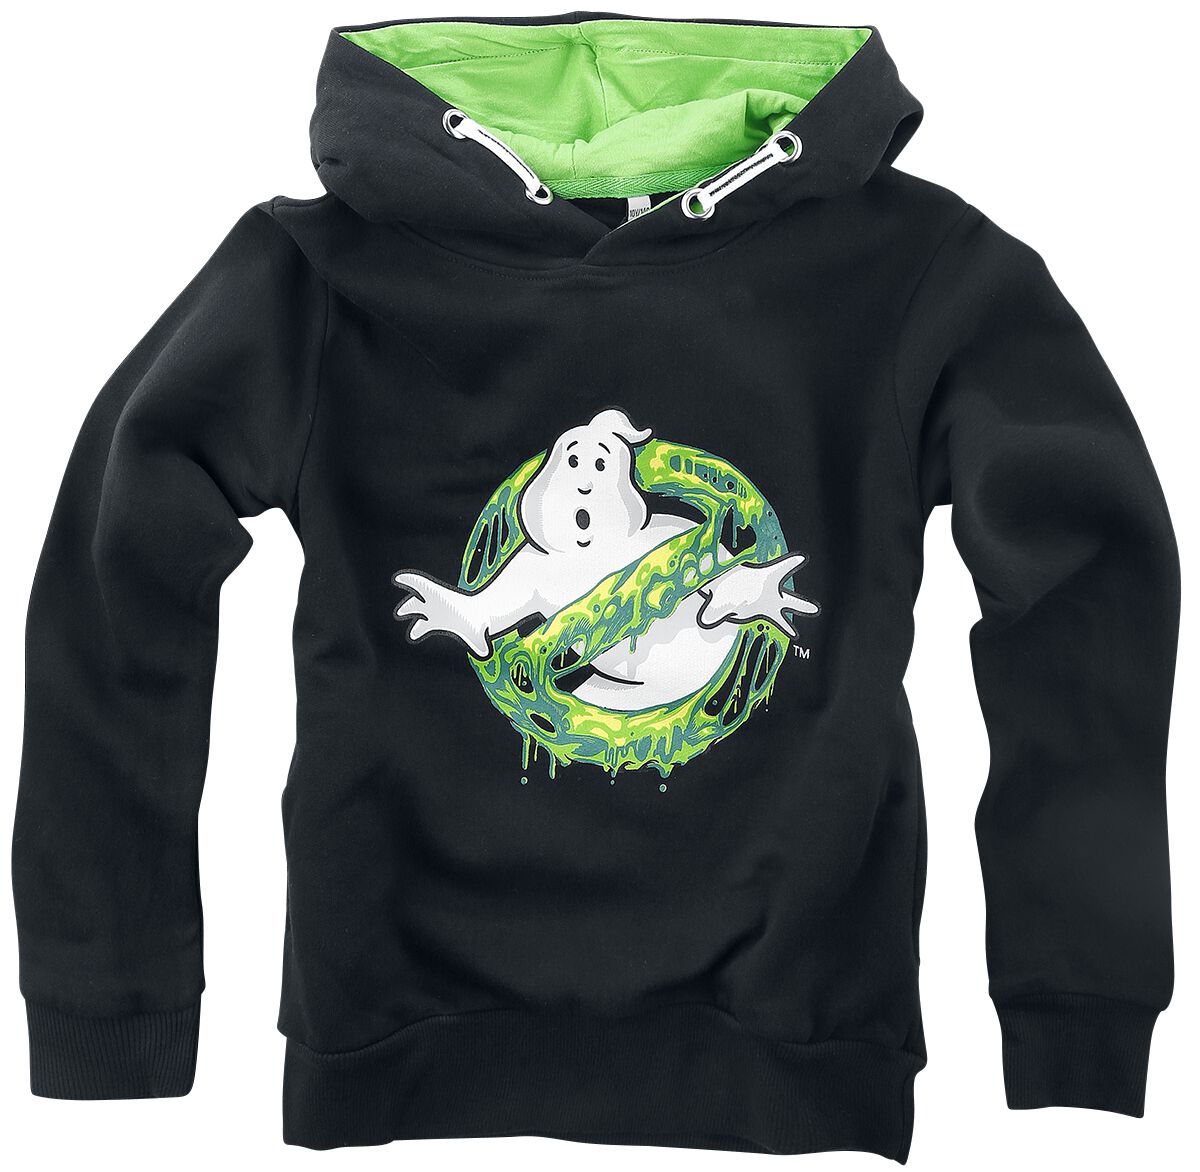 Ghostbusters Kapuzenpullover - Kids - I Ain`t Afraid Of No Ghost - 116 bis 140 - Größe 140 - schwarz  - EMP exklusives Merchandise!